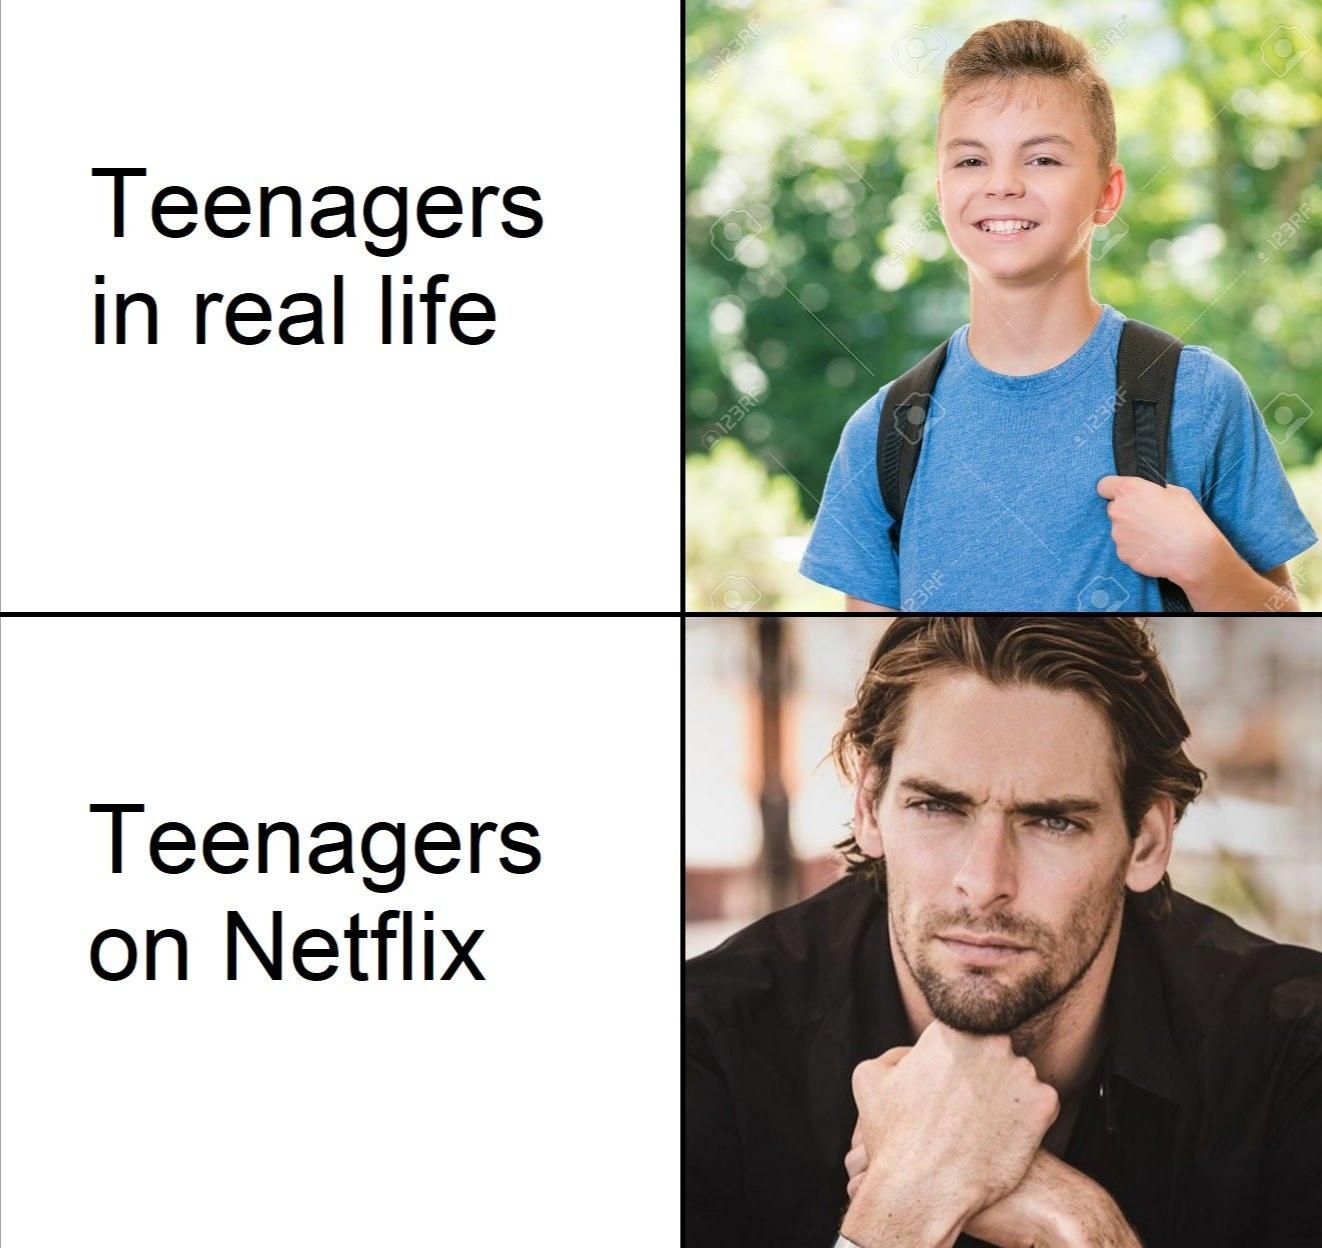 Real life vs Netflix